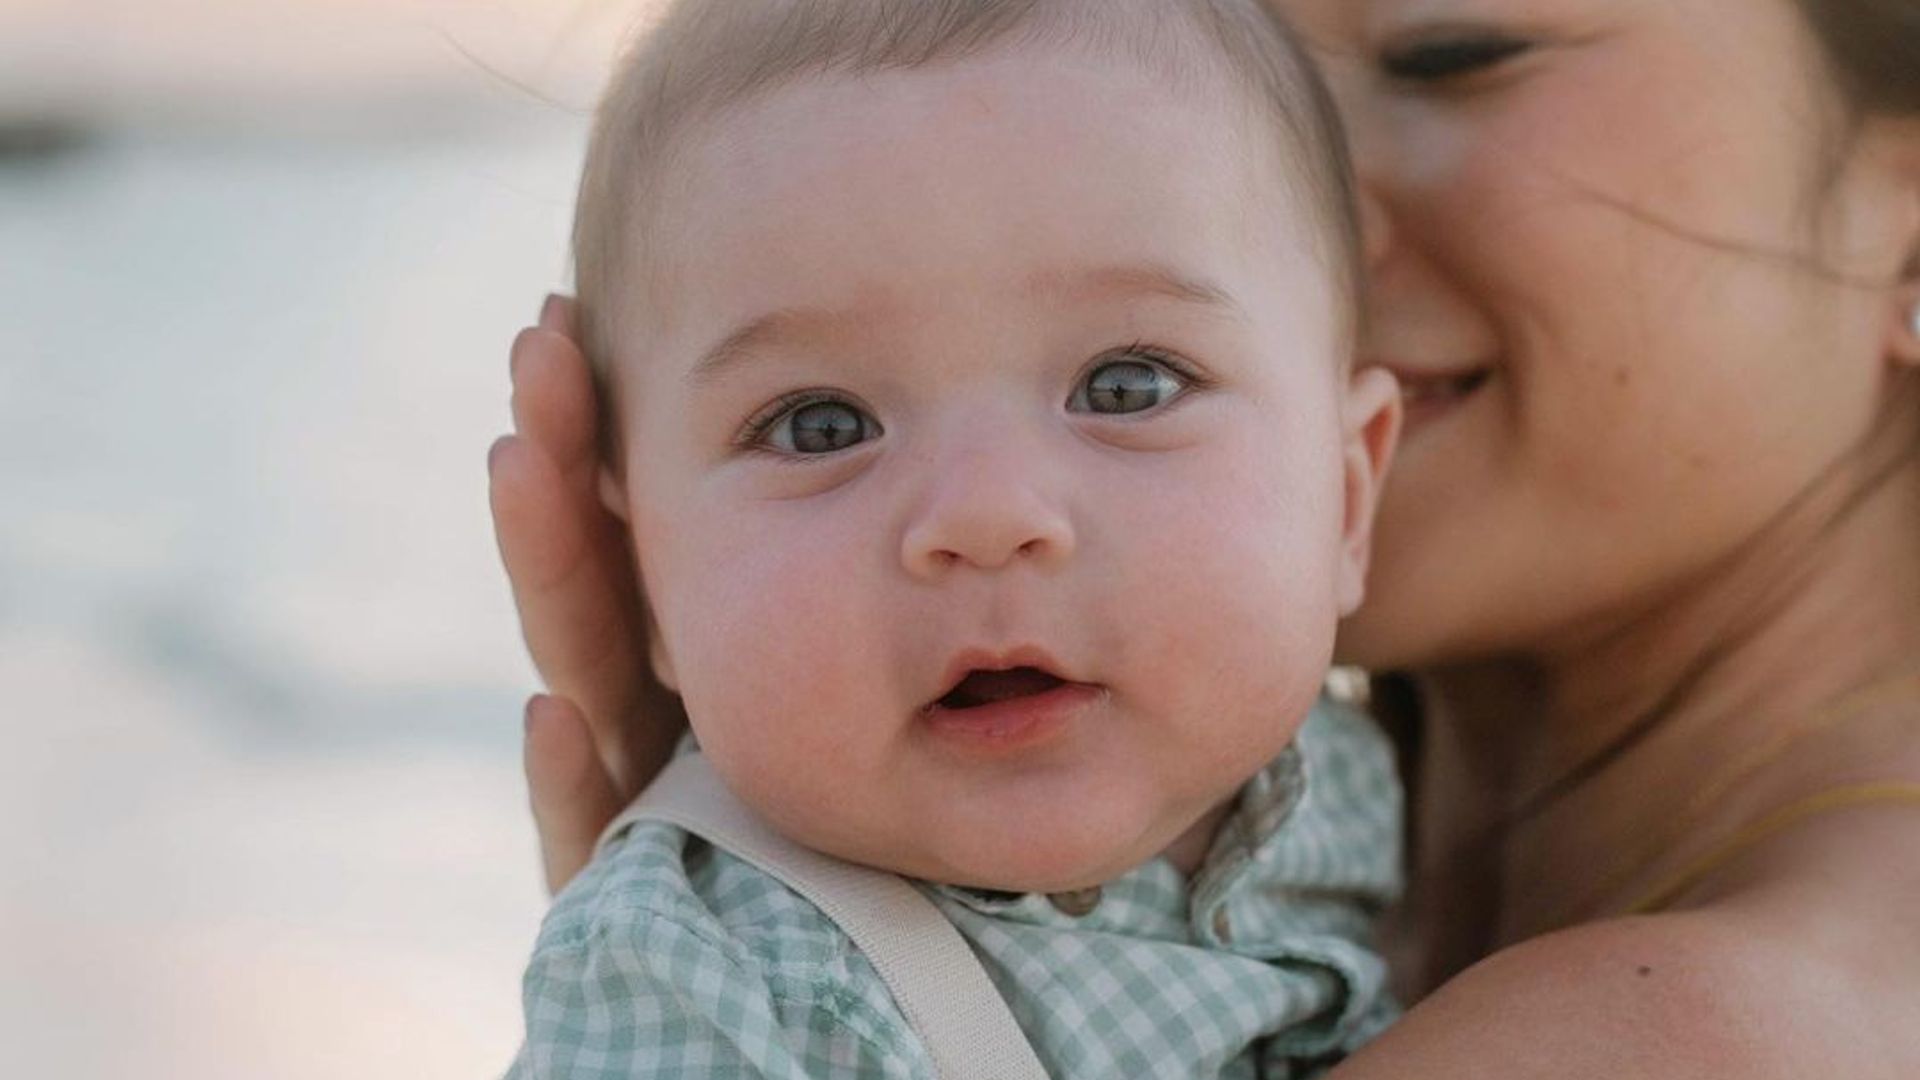 Christine Tran Ferguson, travel blogger, shares devastating update after infant son's death